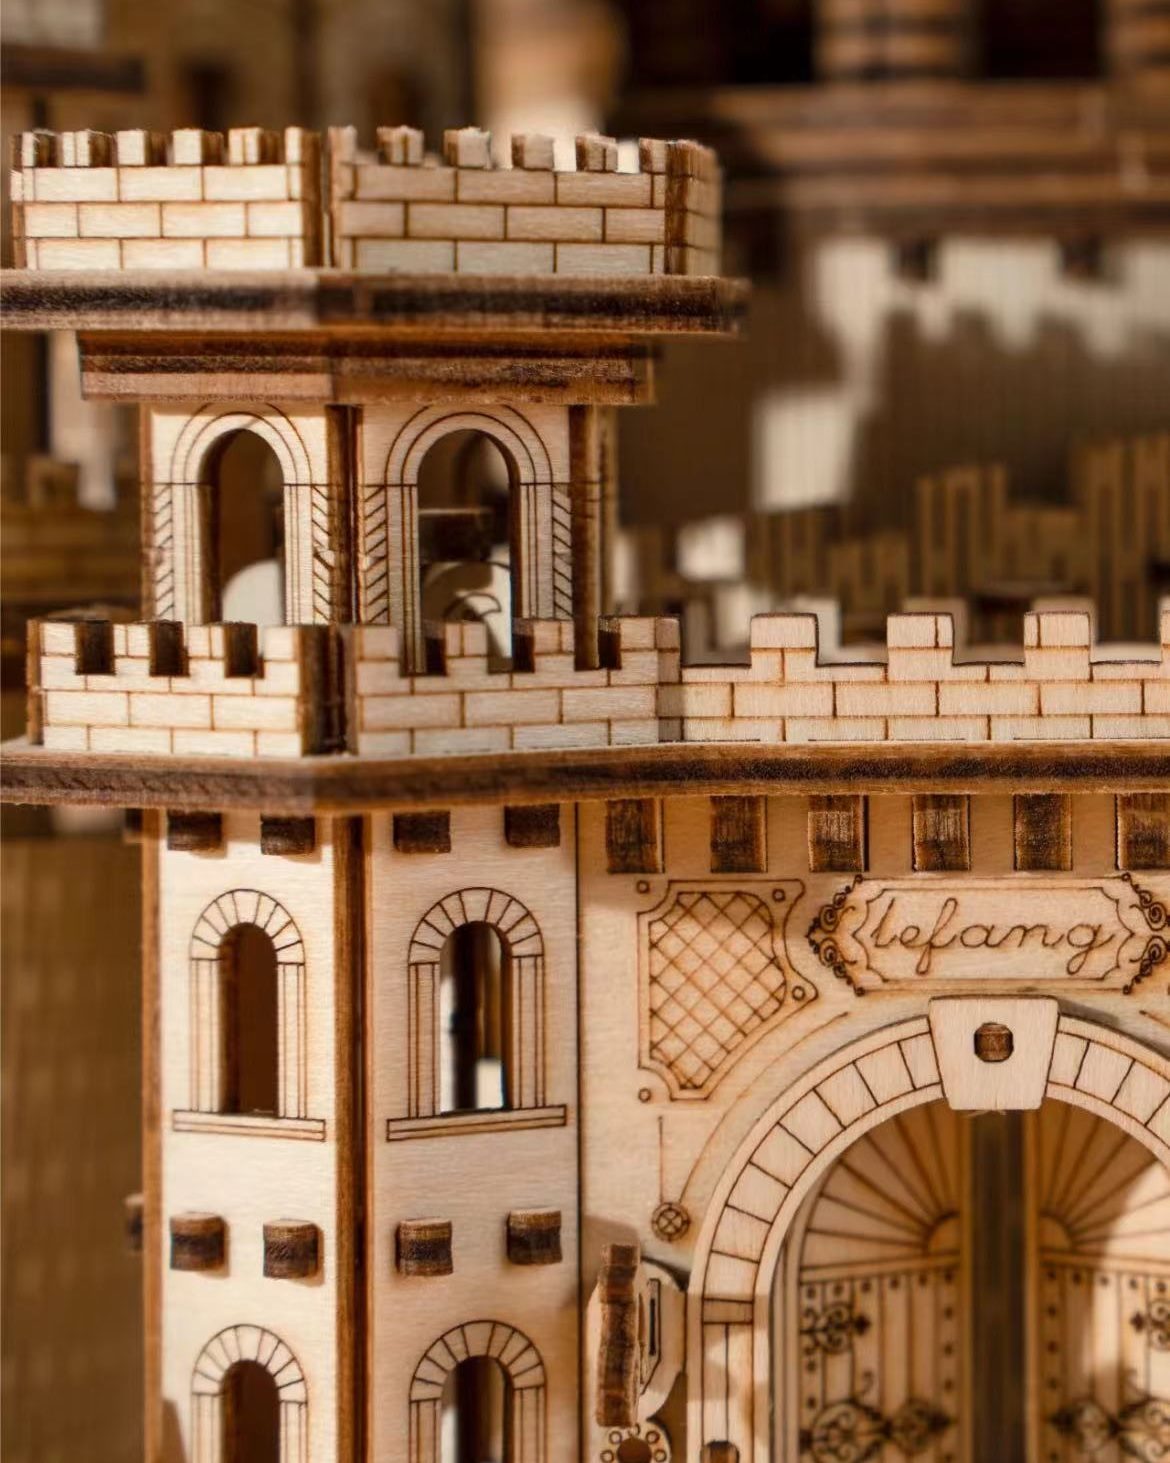 Magic Castle 3D Wooden Puzzle | Moving Gears | Mechanical Models | Miniature - part 2